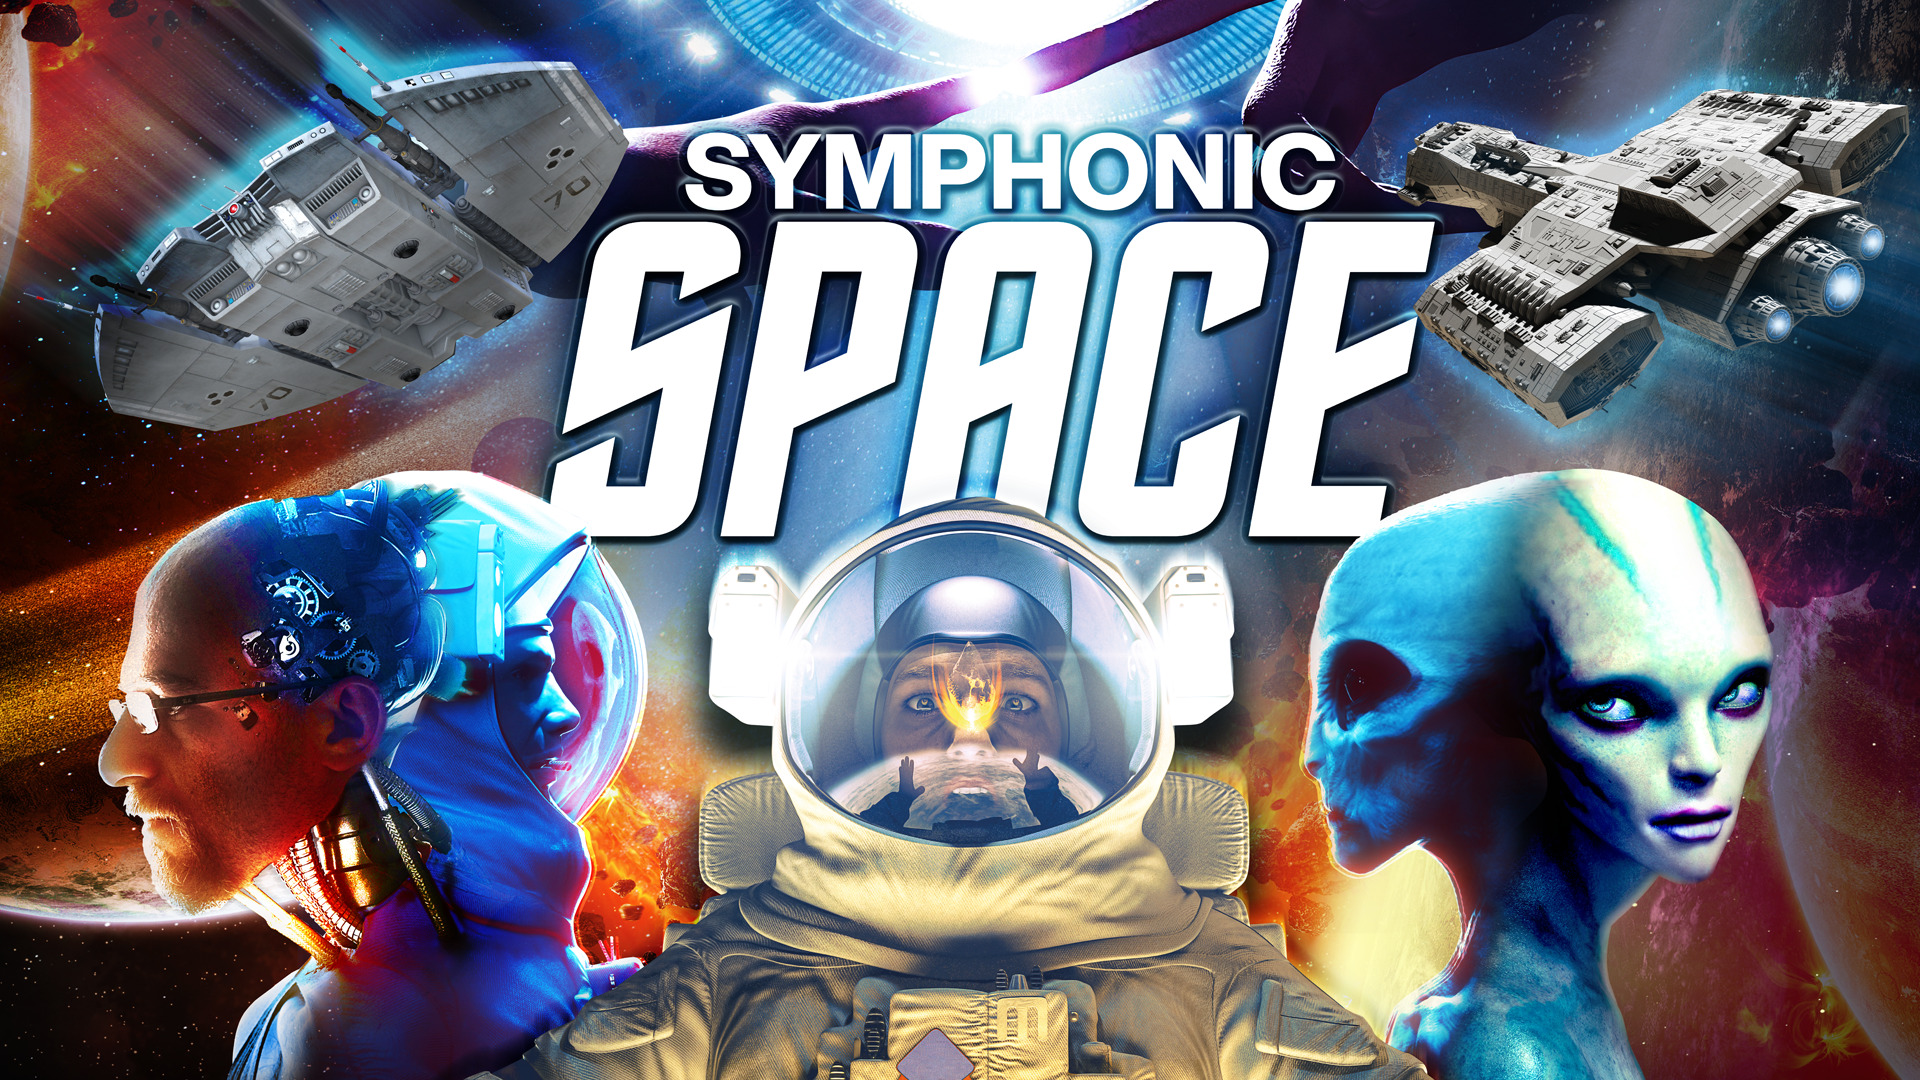 Symphonic Space